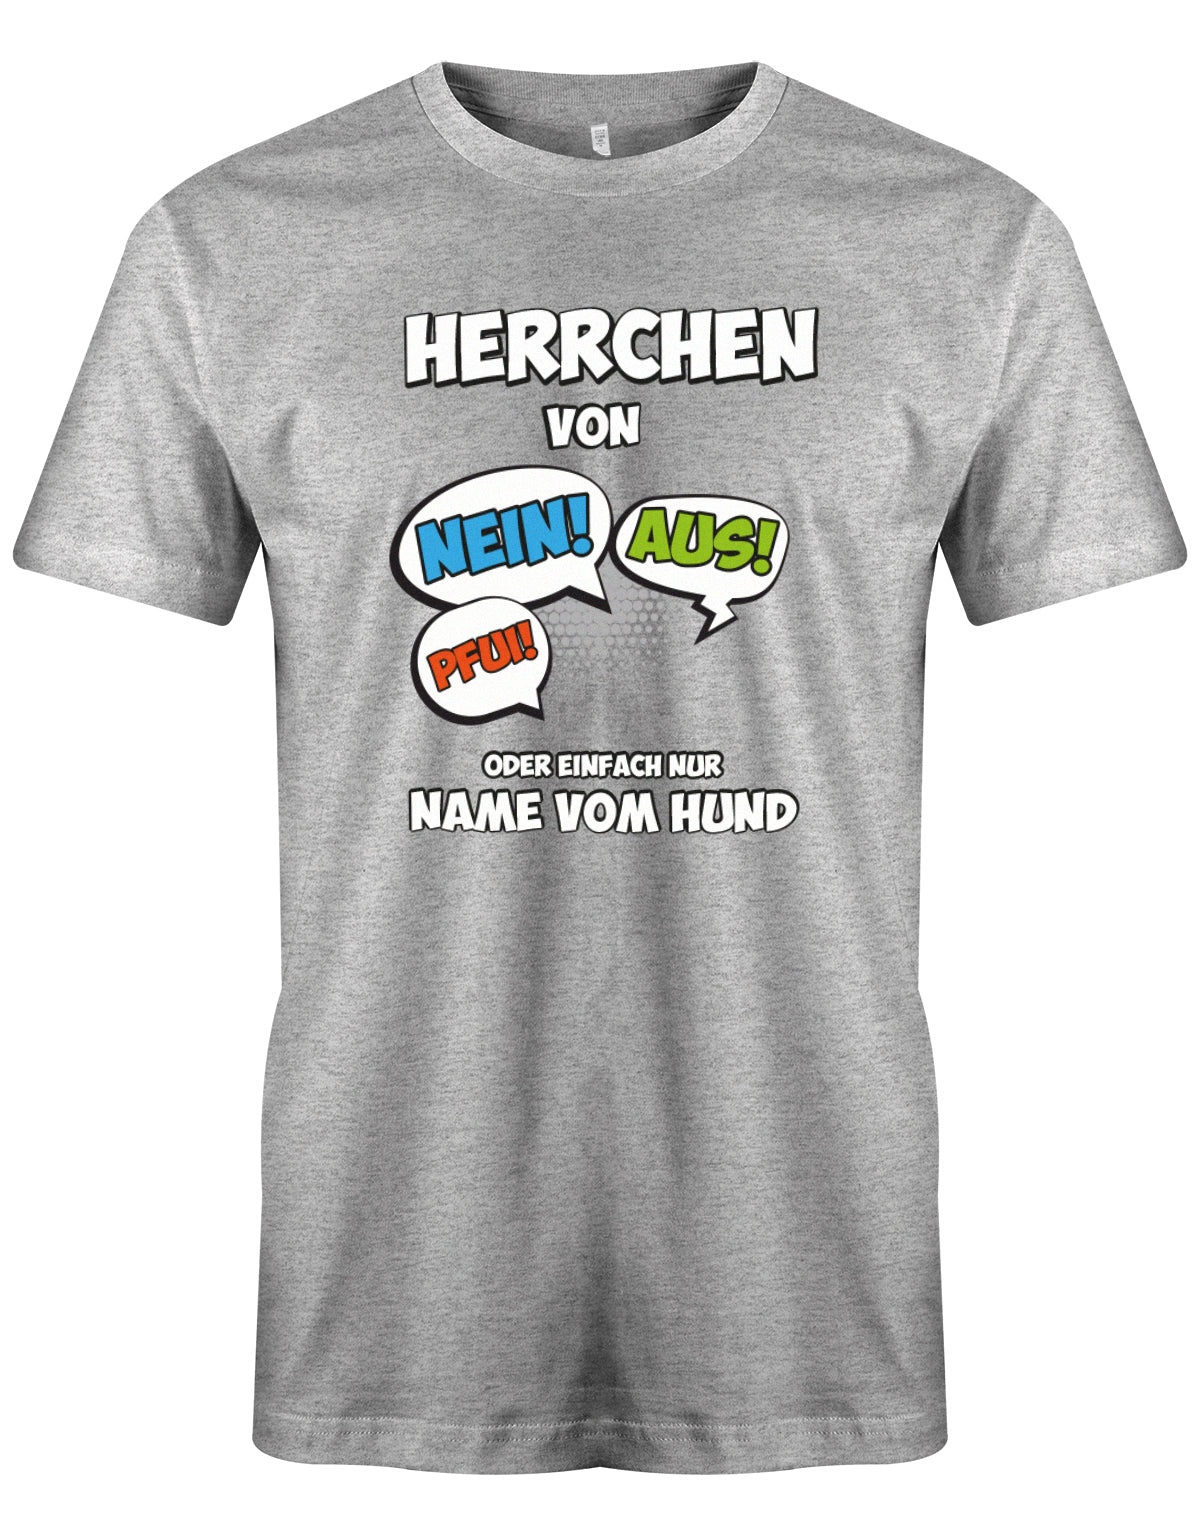 herren-shirt-graud9UKKcRtLaD2y